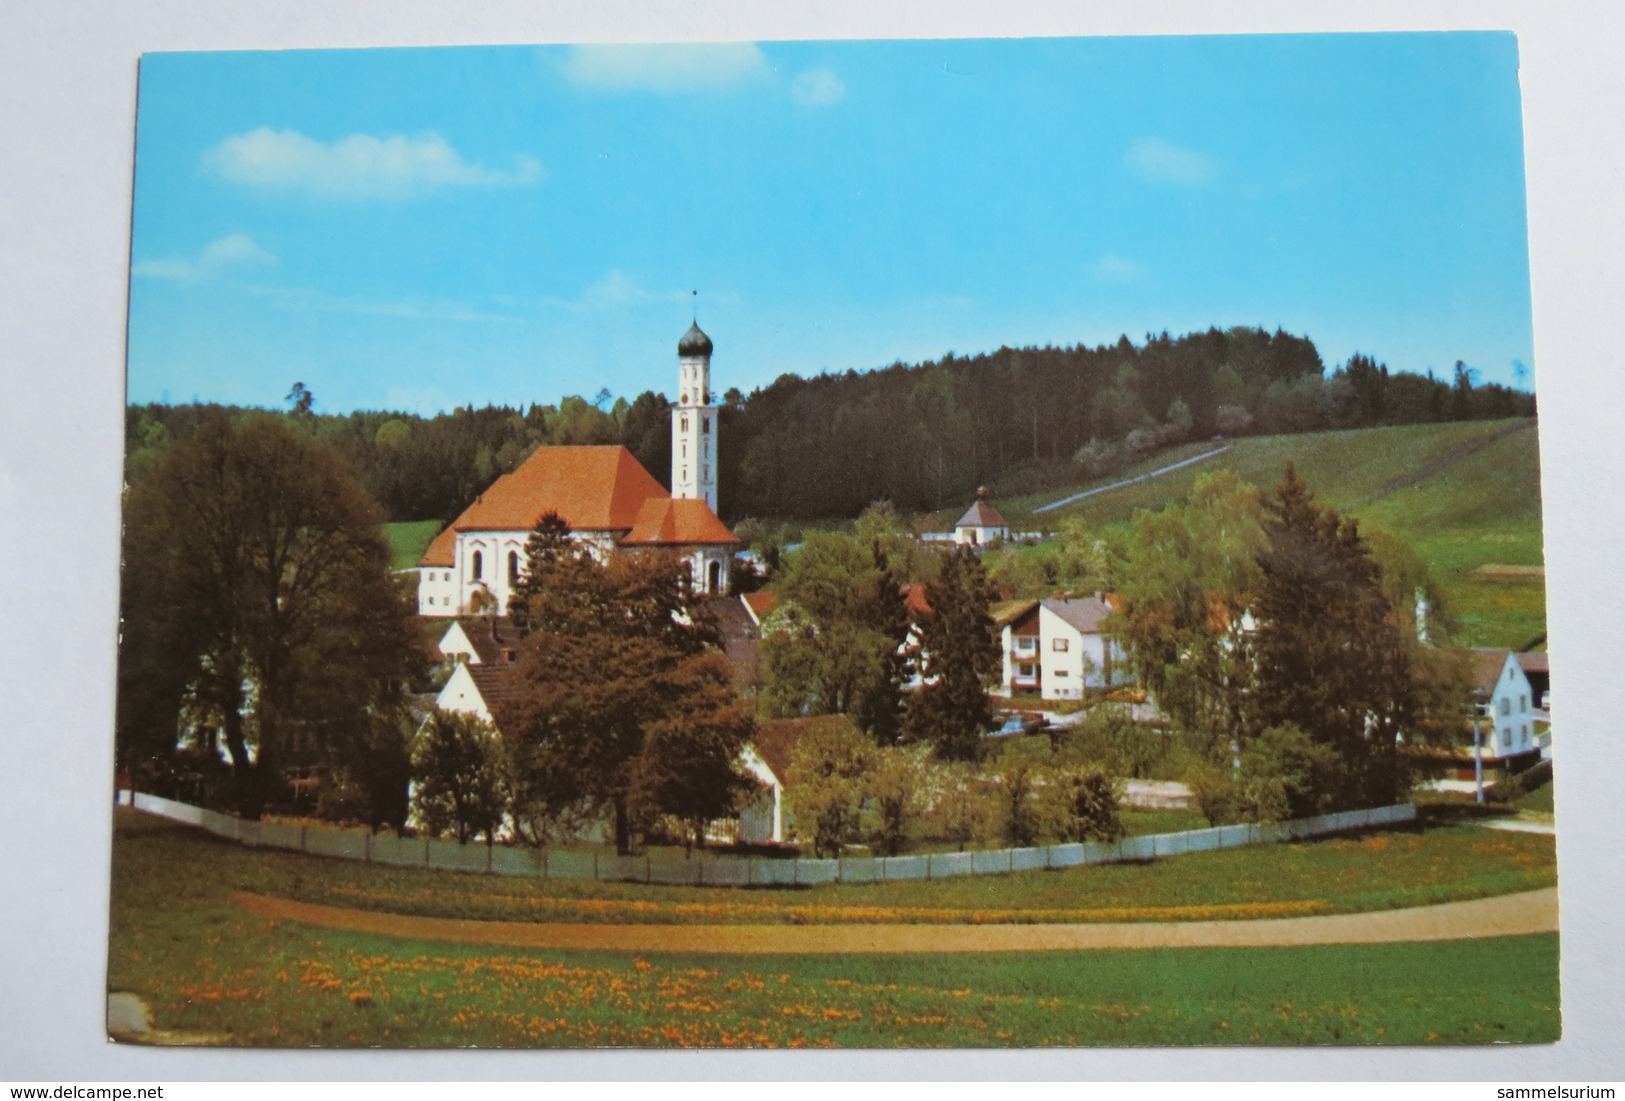 (11/3/3) Postkarte/AK "Violau" Wallfahrtskirche - Bad Sooden-Allendorf